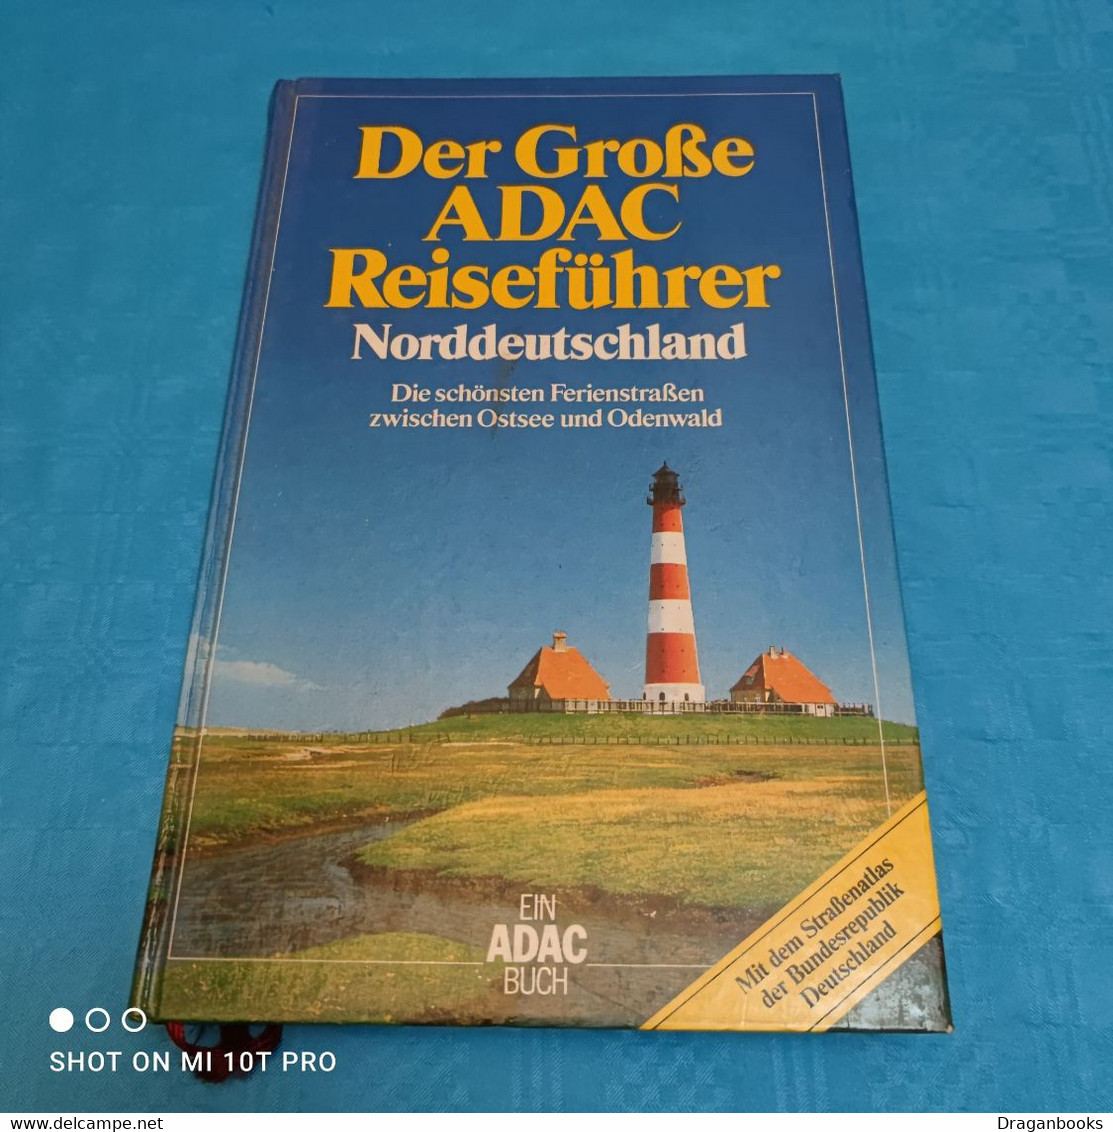 Der Grosse ADAC Reiseführer - Norddeutschland - Germany (general)